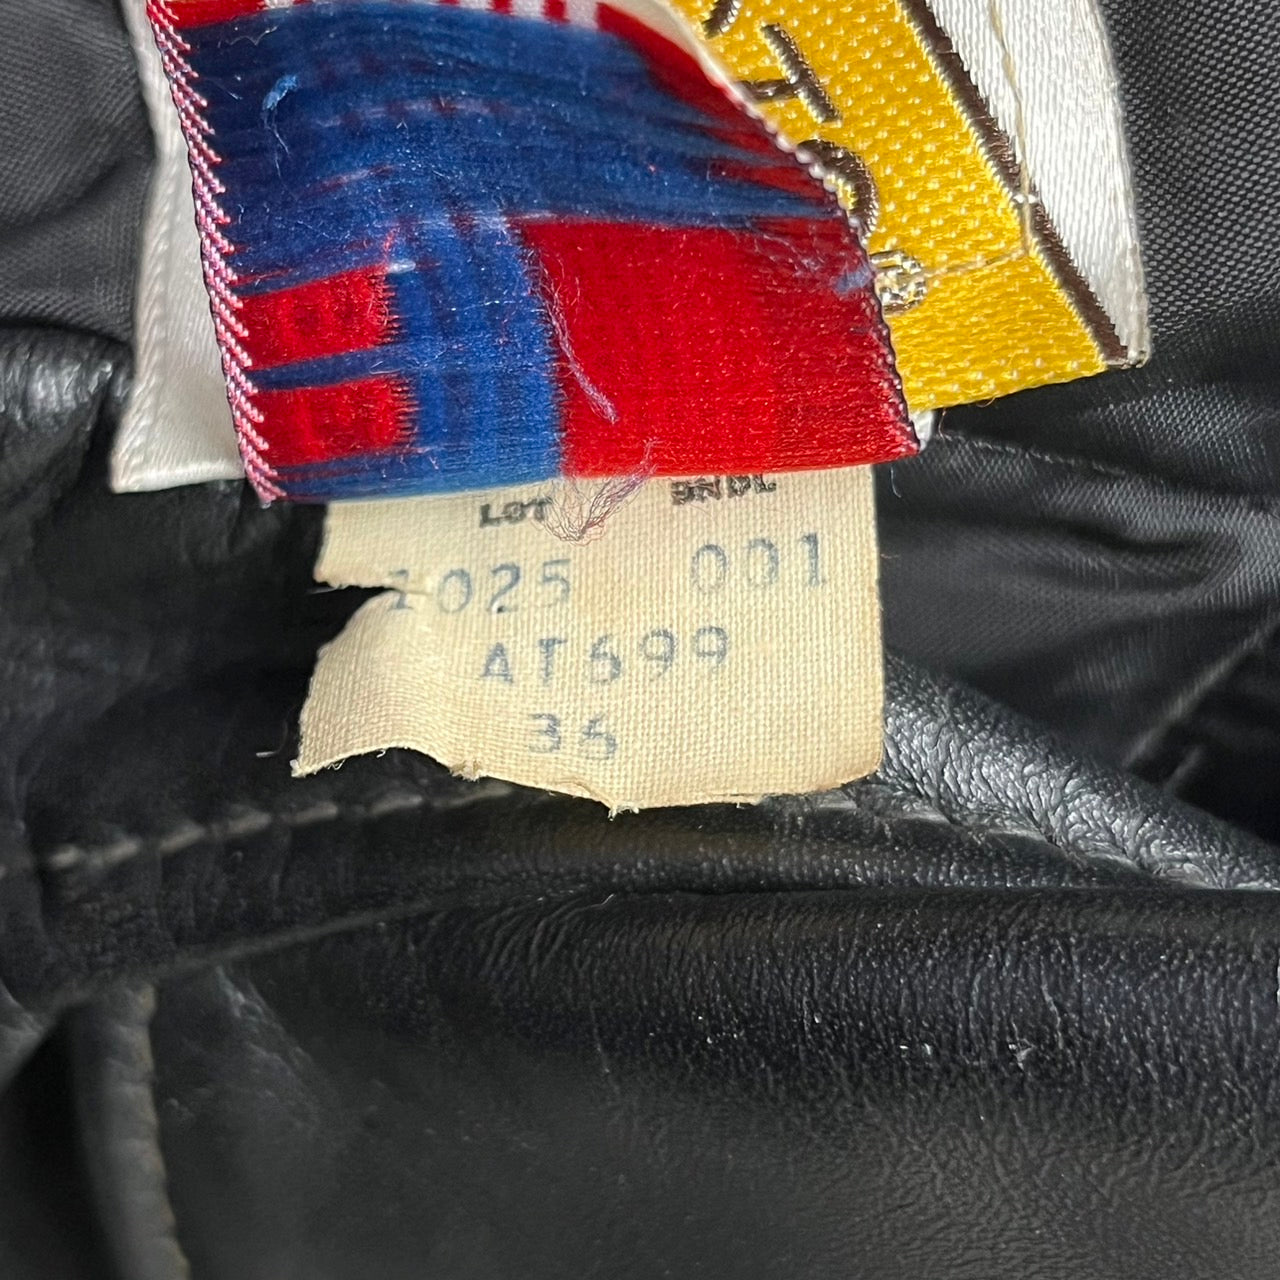 SCHOTT(ショット)希少モデル 80~90's double leather jacket/ダブルレザージャケット lot 1025 36(Sサイズ程度) ブラック バイカータグ後期 ライダースジャケット